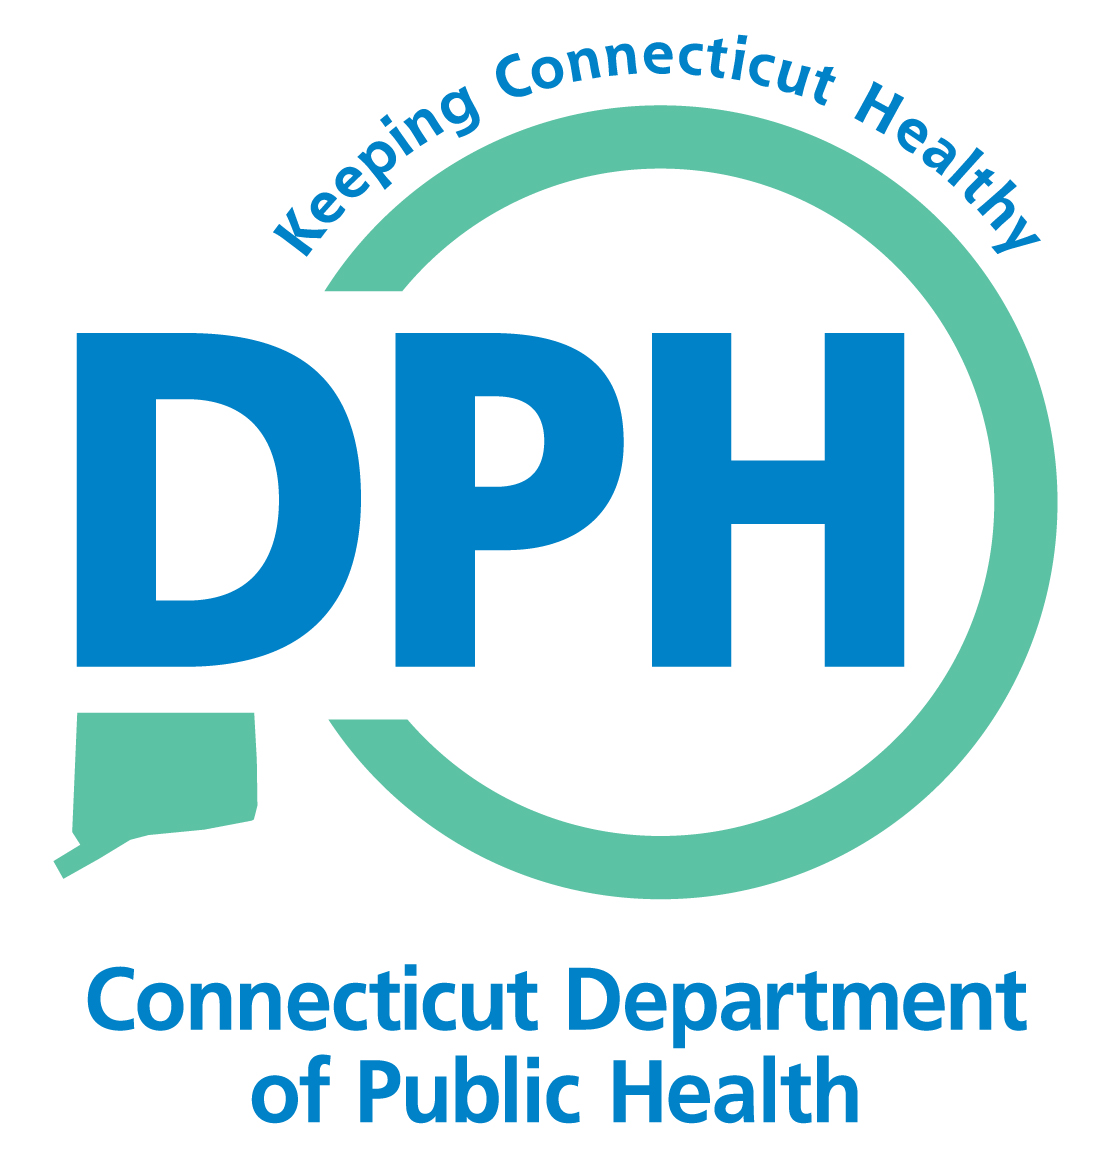 CT Department of Public Health